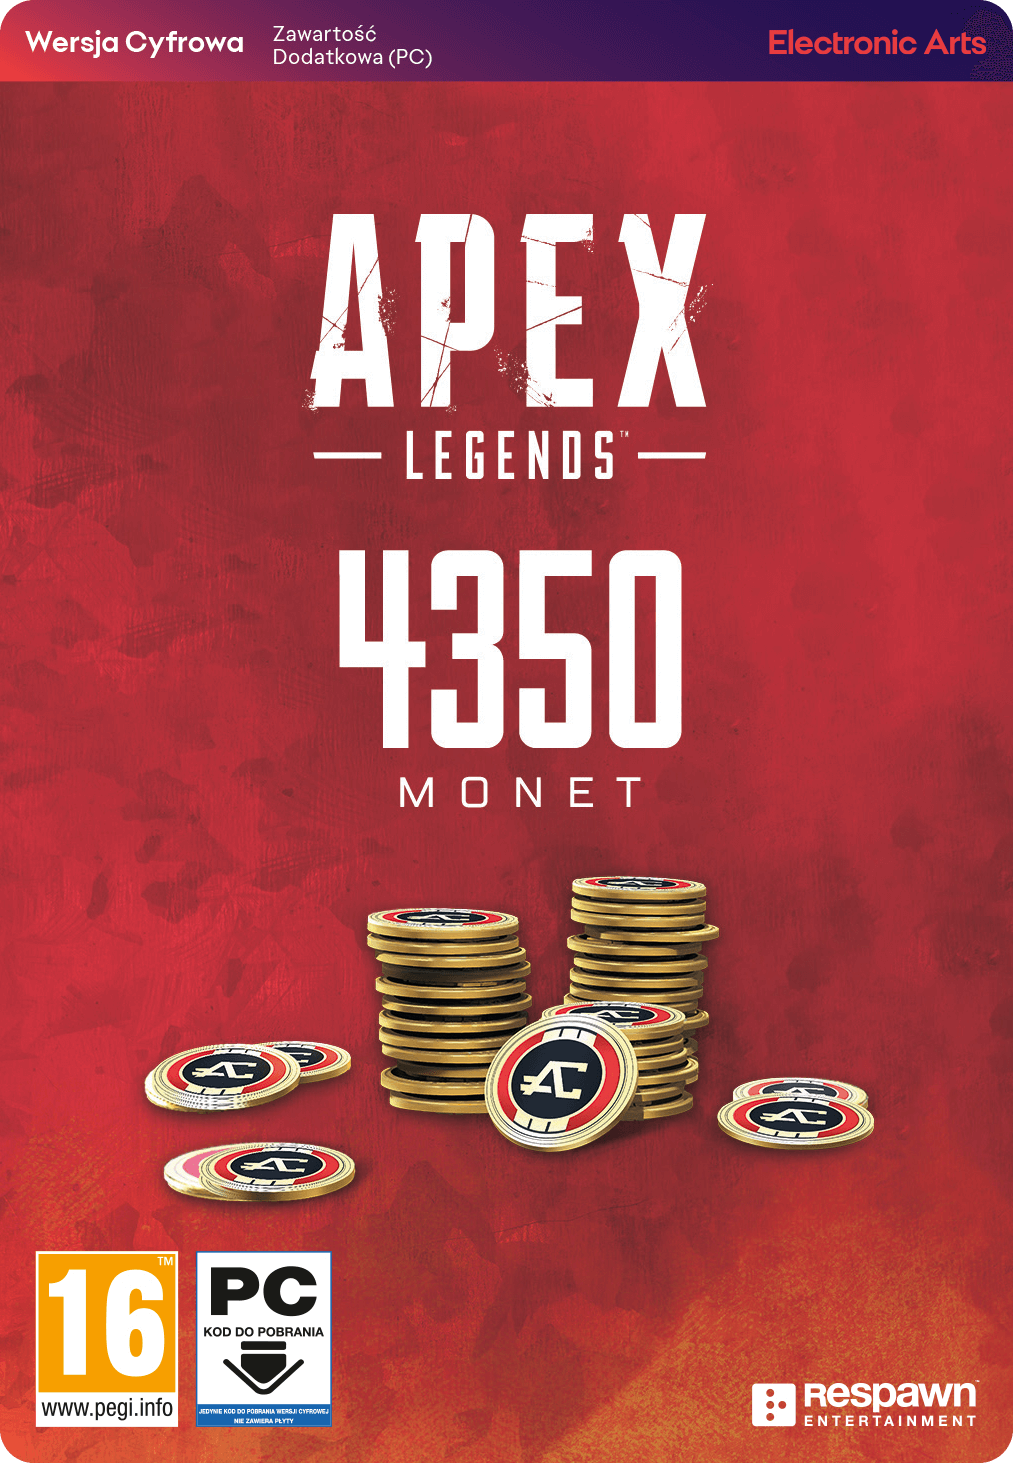 Apex Legends Coins 4350 Monet